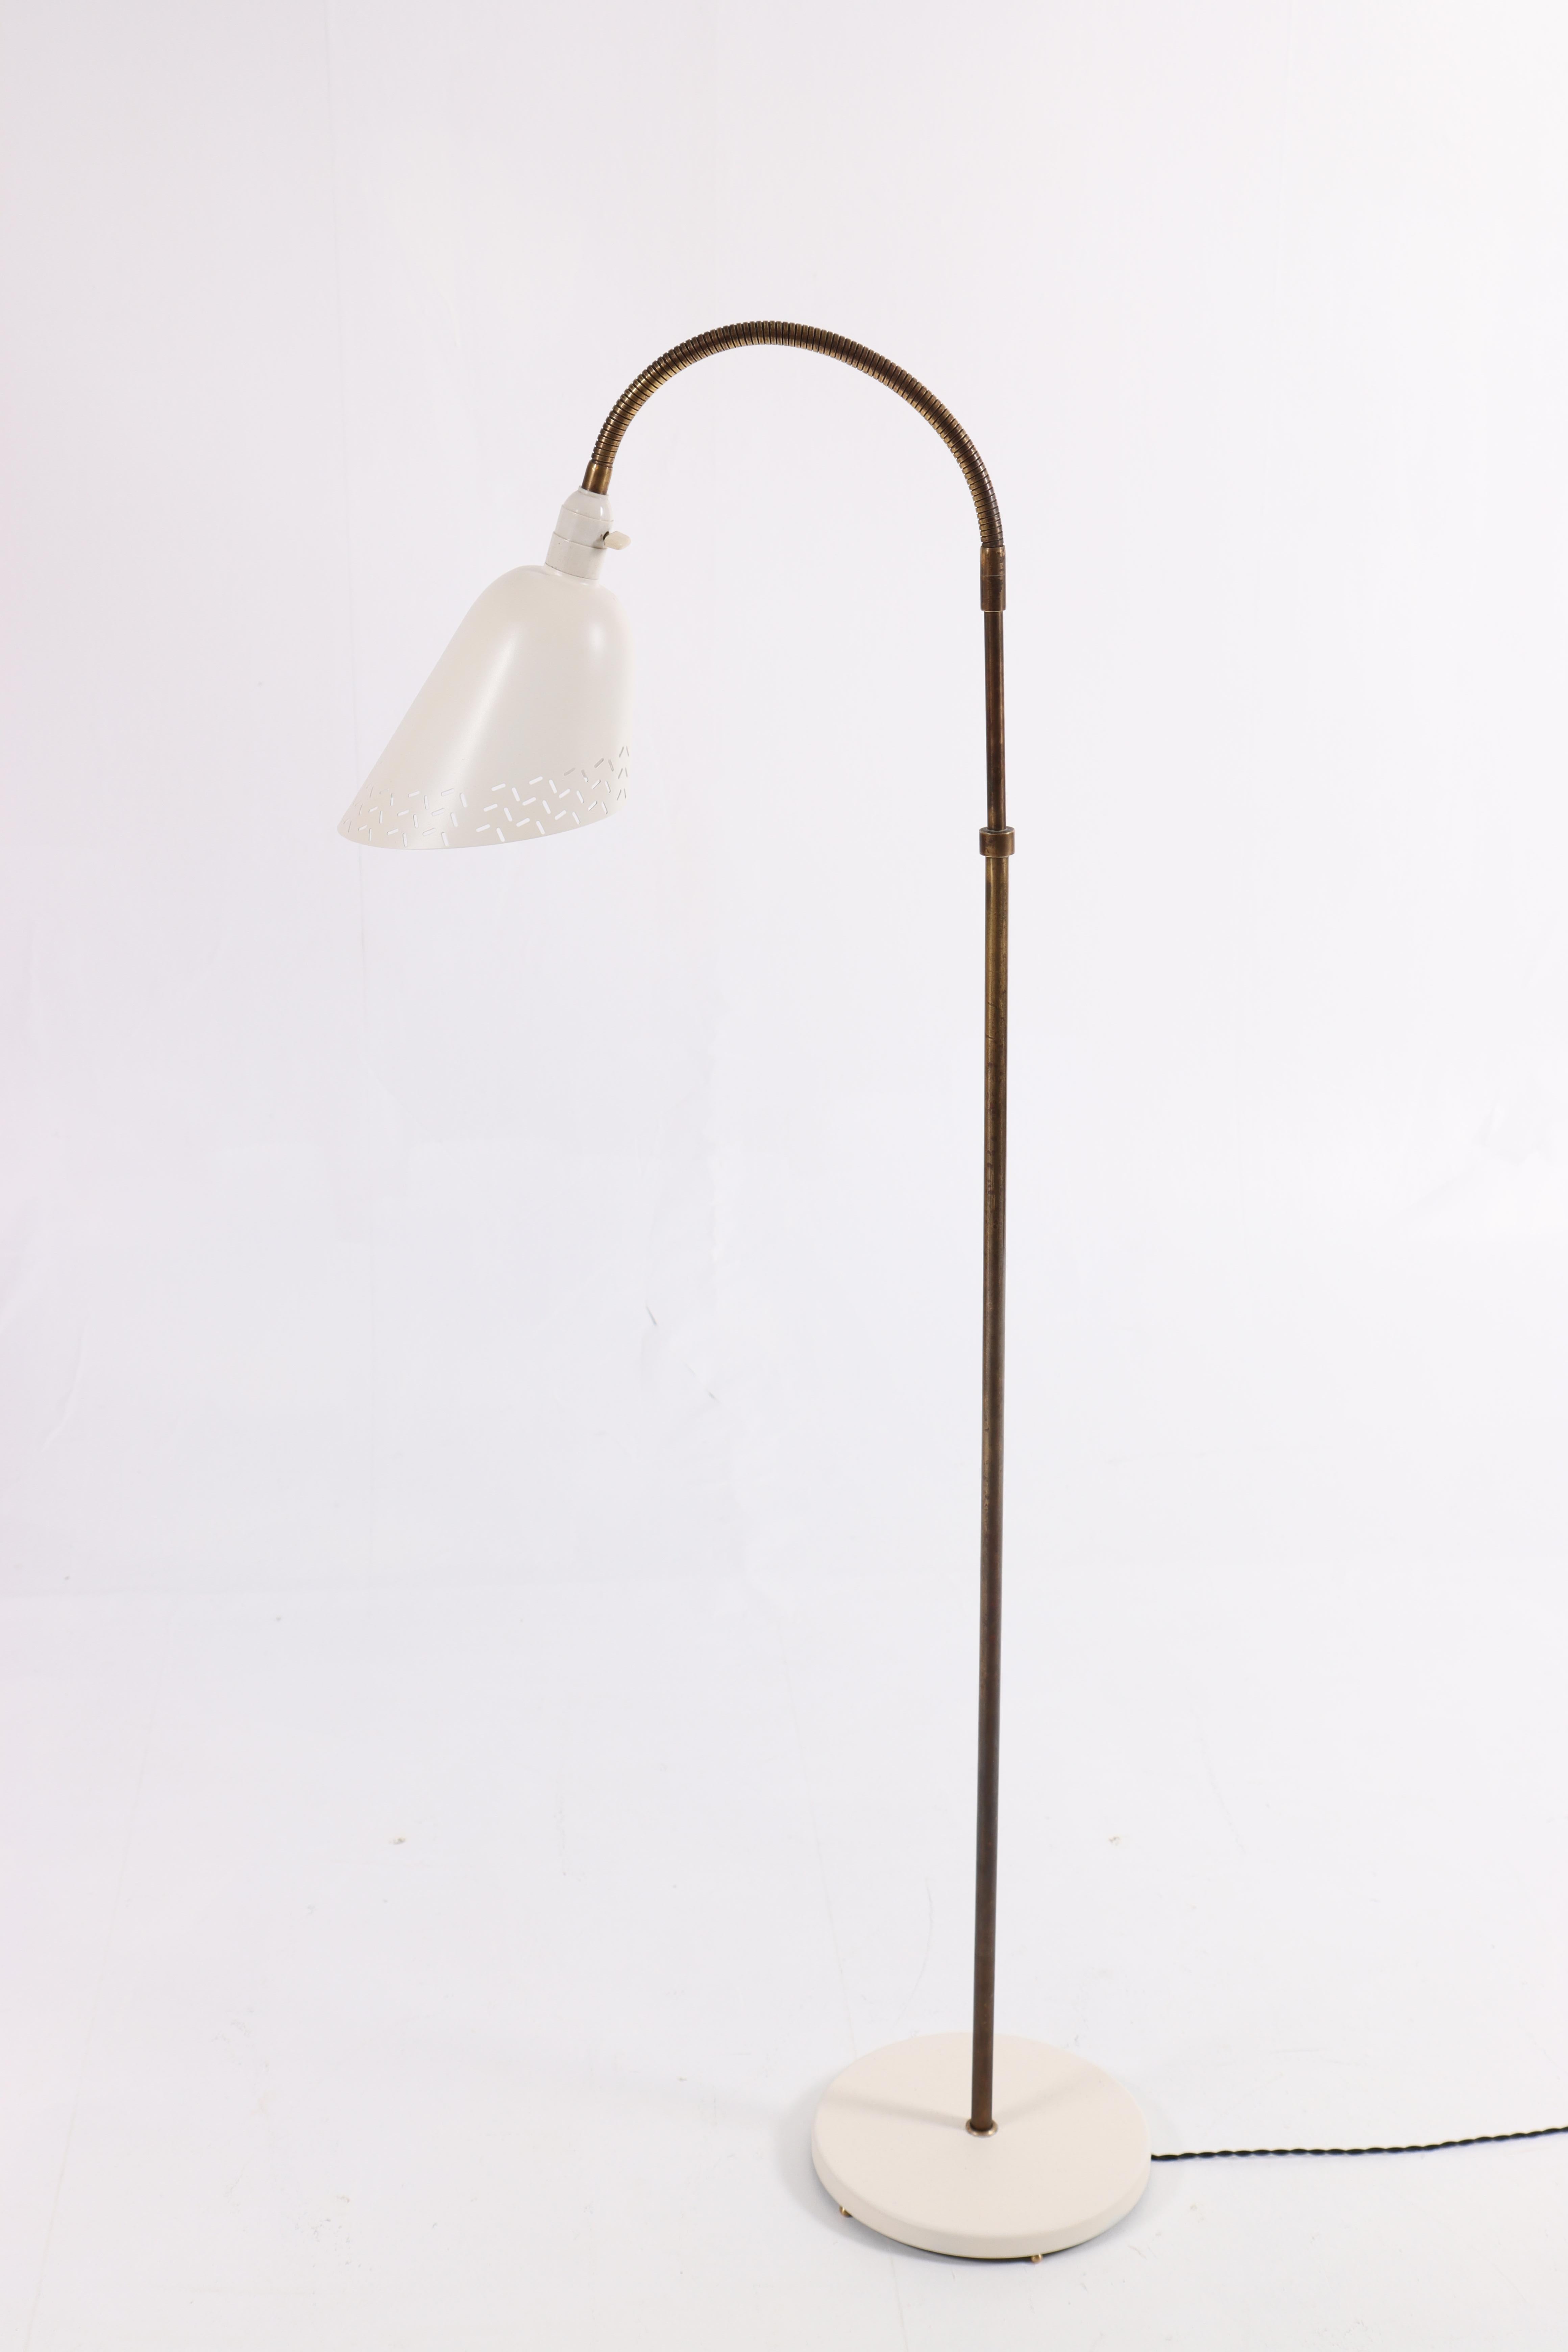 Mid-20th Century Bellevue Floor Lamp by Arne Jacobsen, Scandinavian Modern, 1960s For Sale